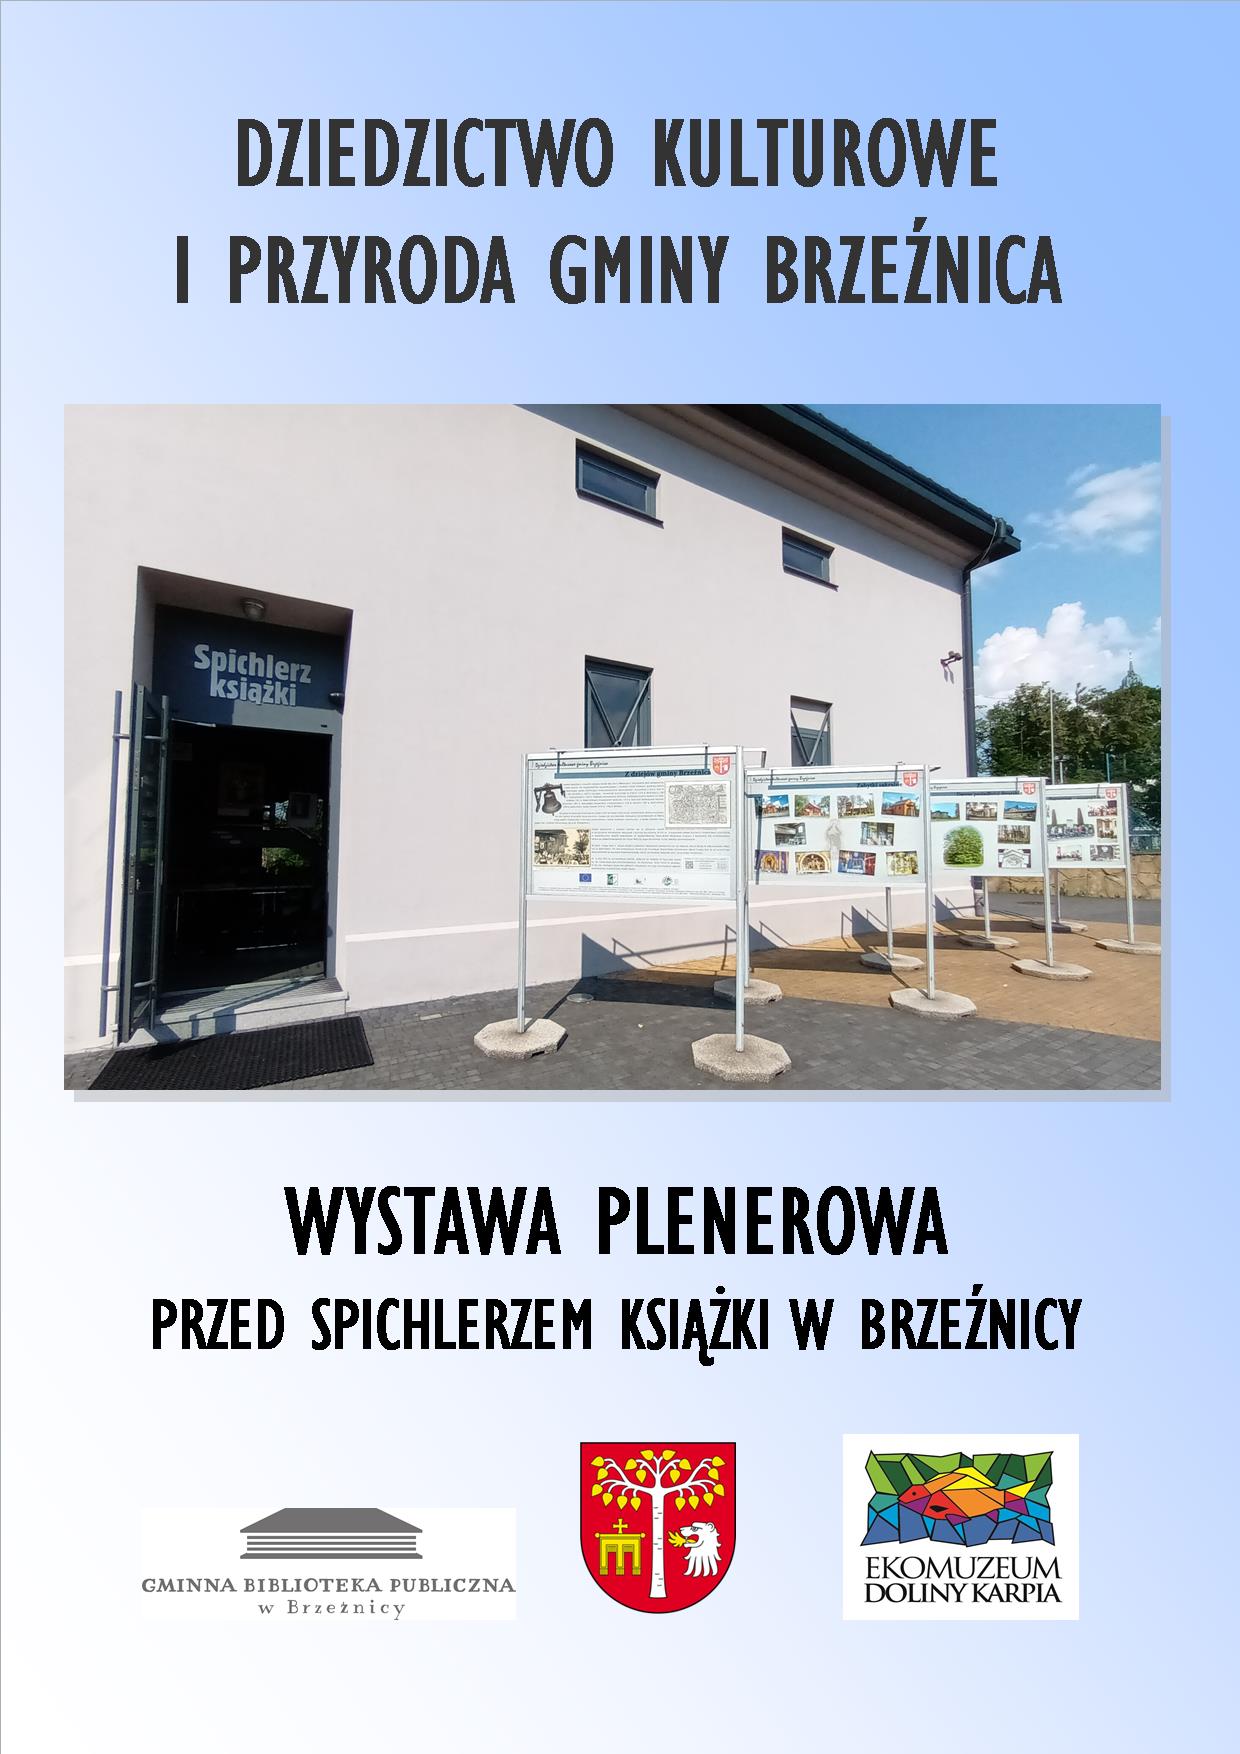 Plakat wystawy plenerowej na temat dziedzictwa kulturowego i przyrody gminy Brzeźnica